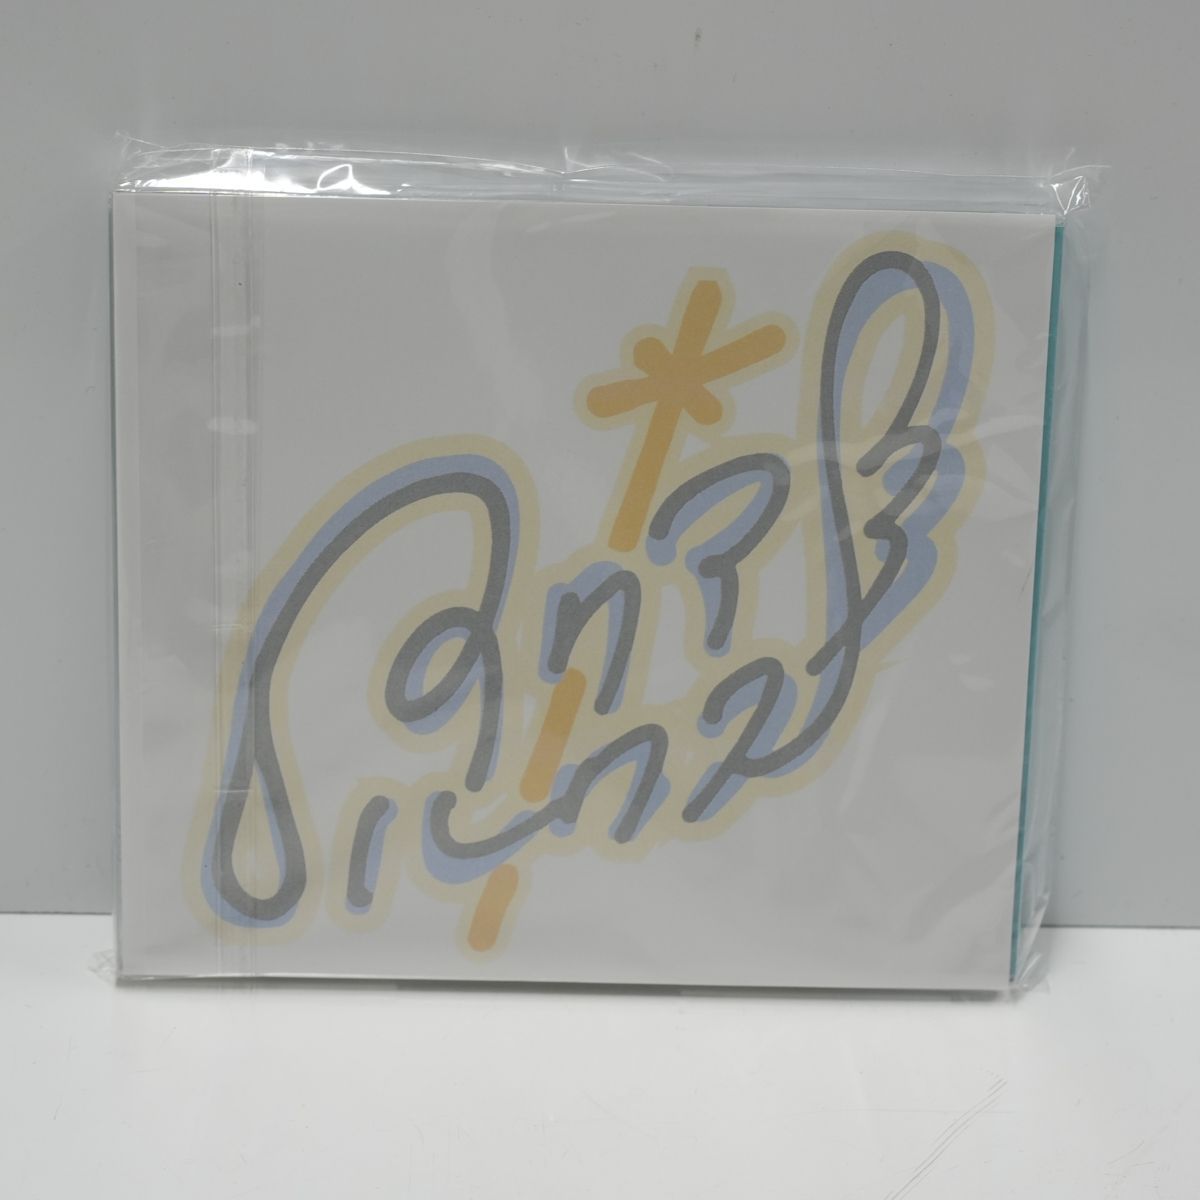 アクアルクス 1stフルアルバムCD 「コウゴウセイ」 カンバッチ3枚セット 新品 アイドル 未開封品 X5075